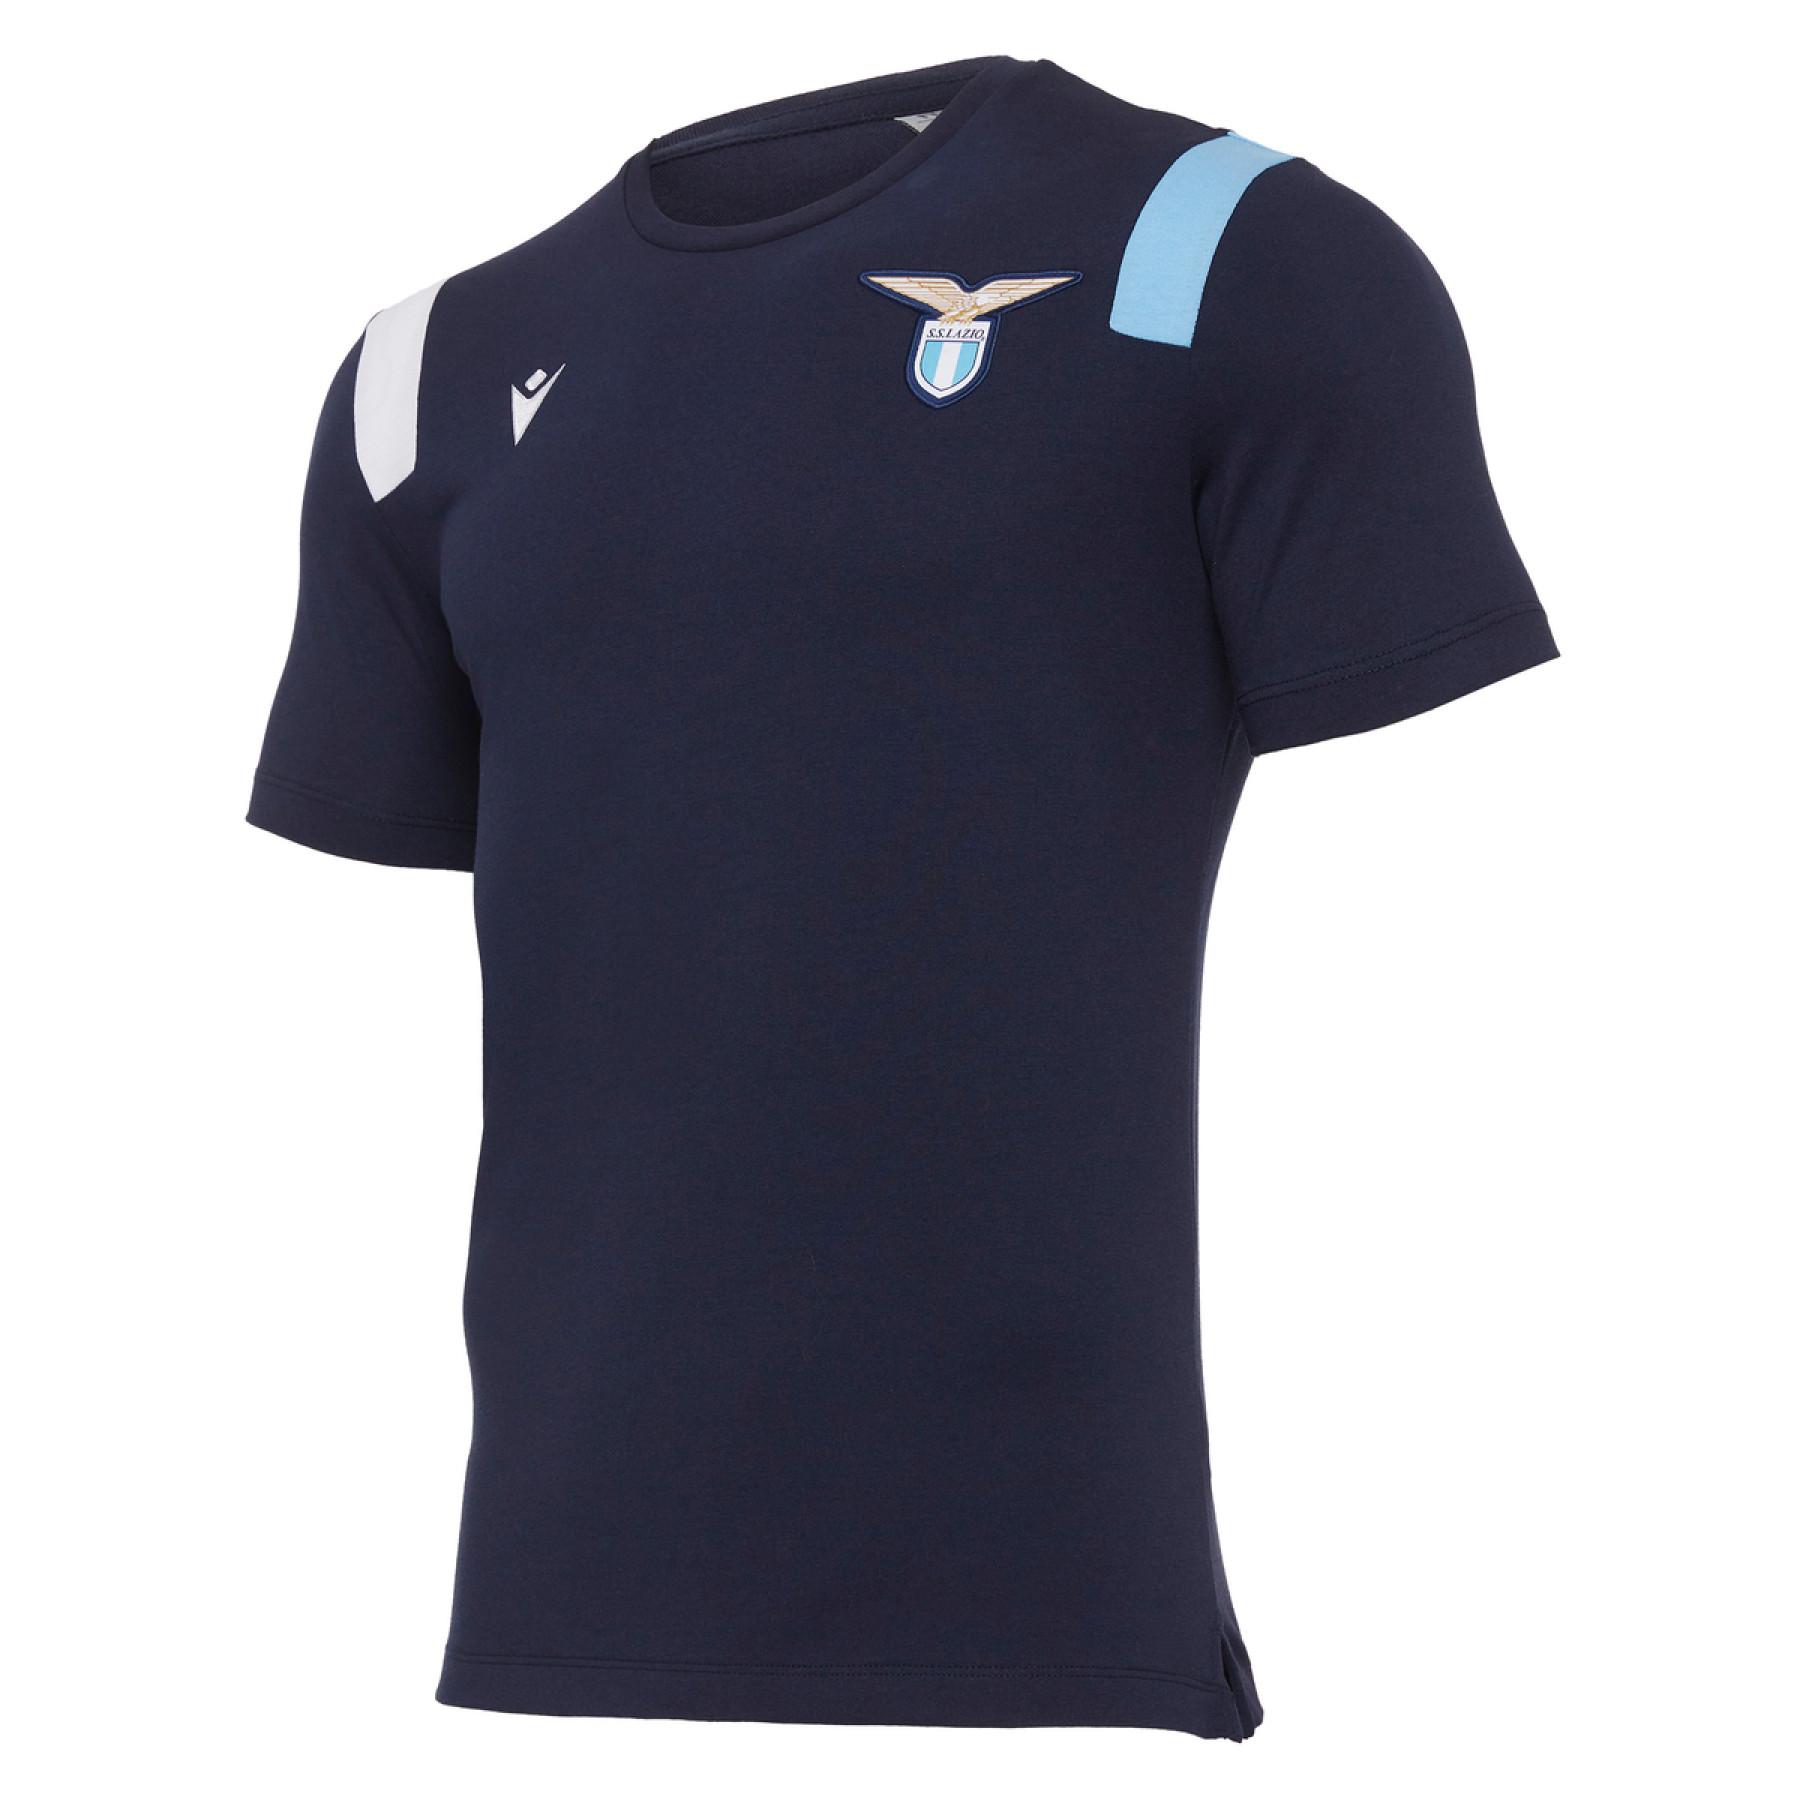 T-shirt Lazio Rome Cotone 2020/21